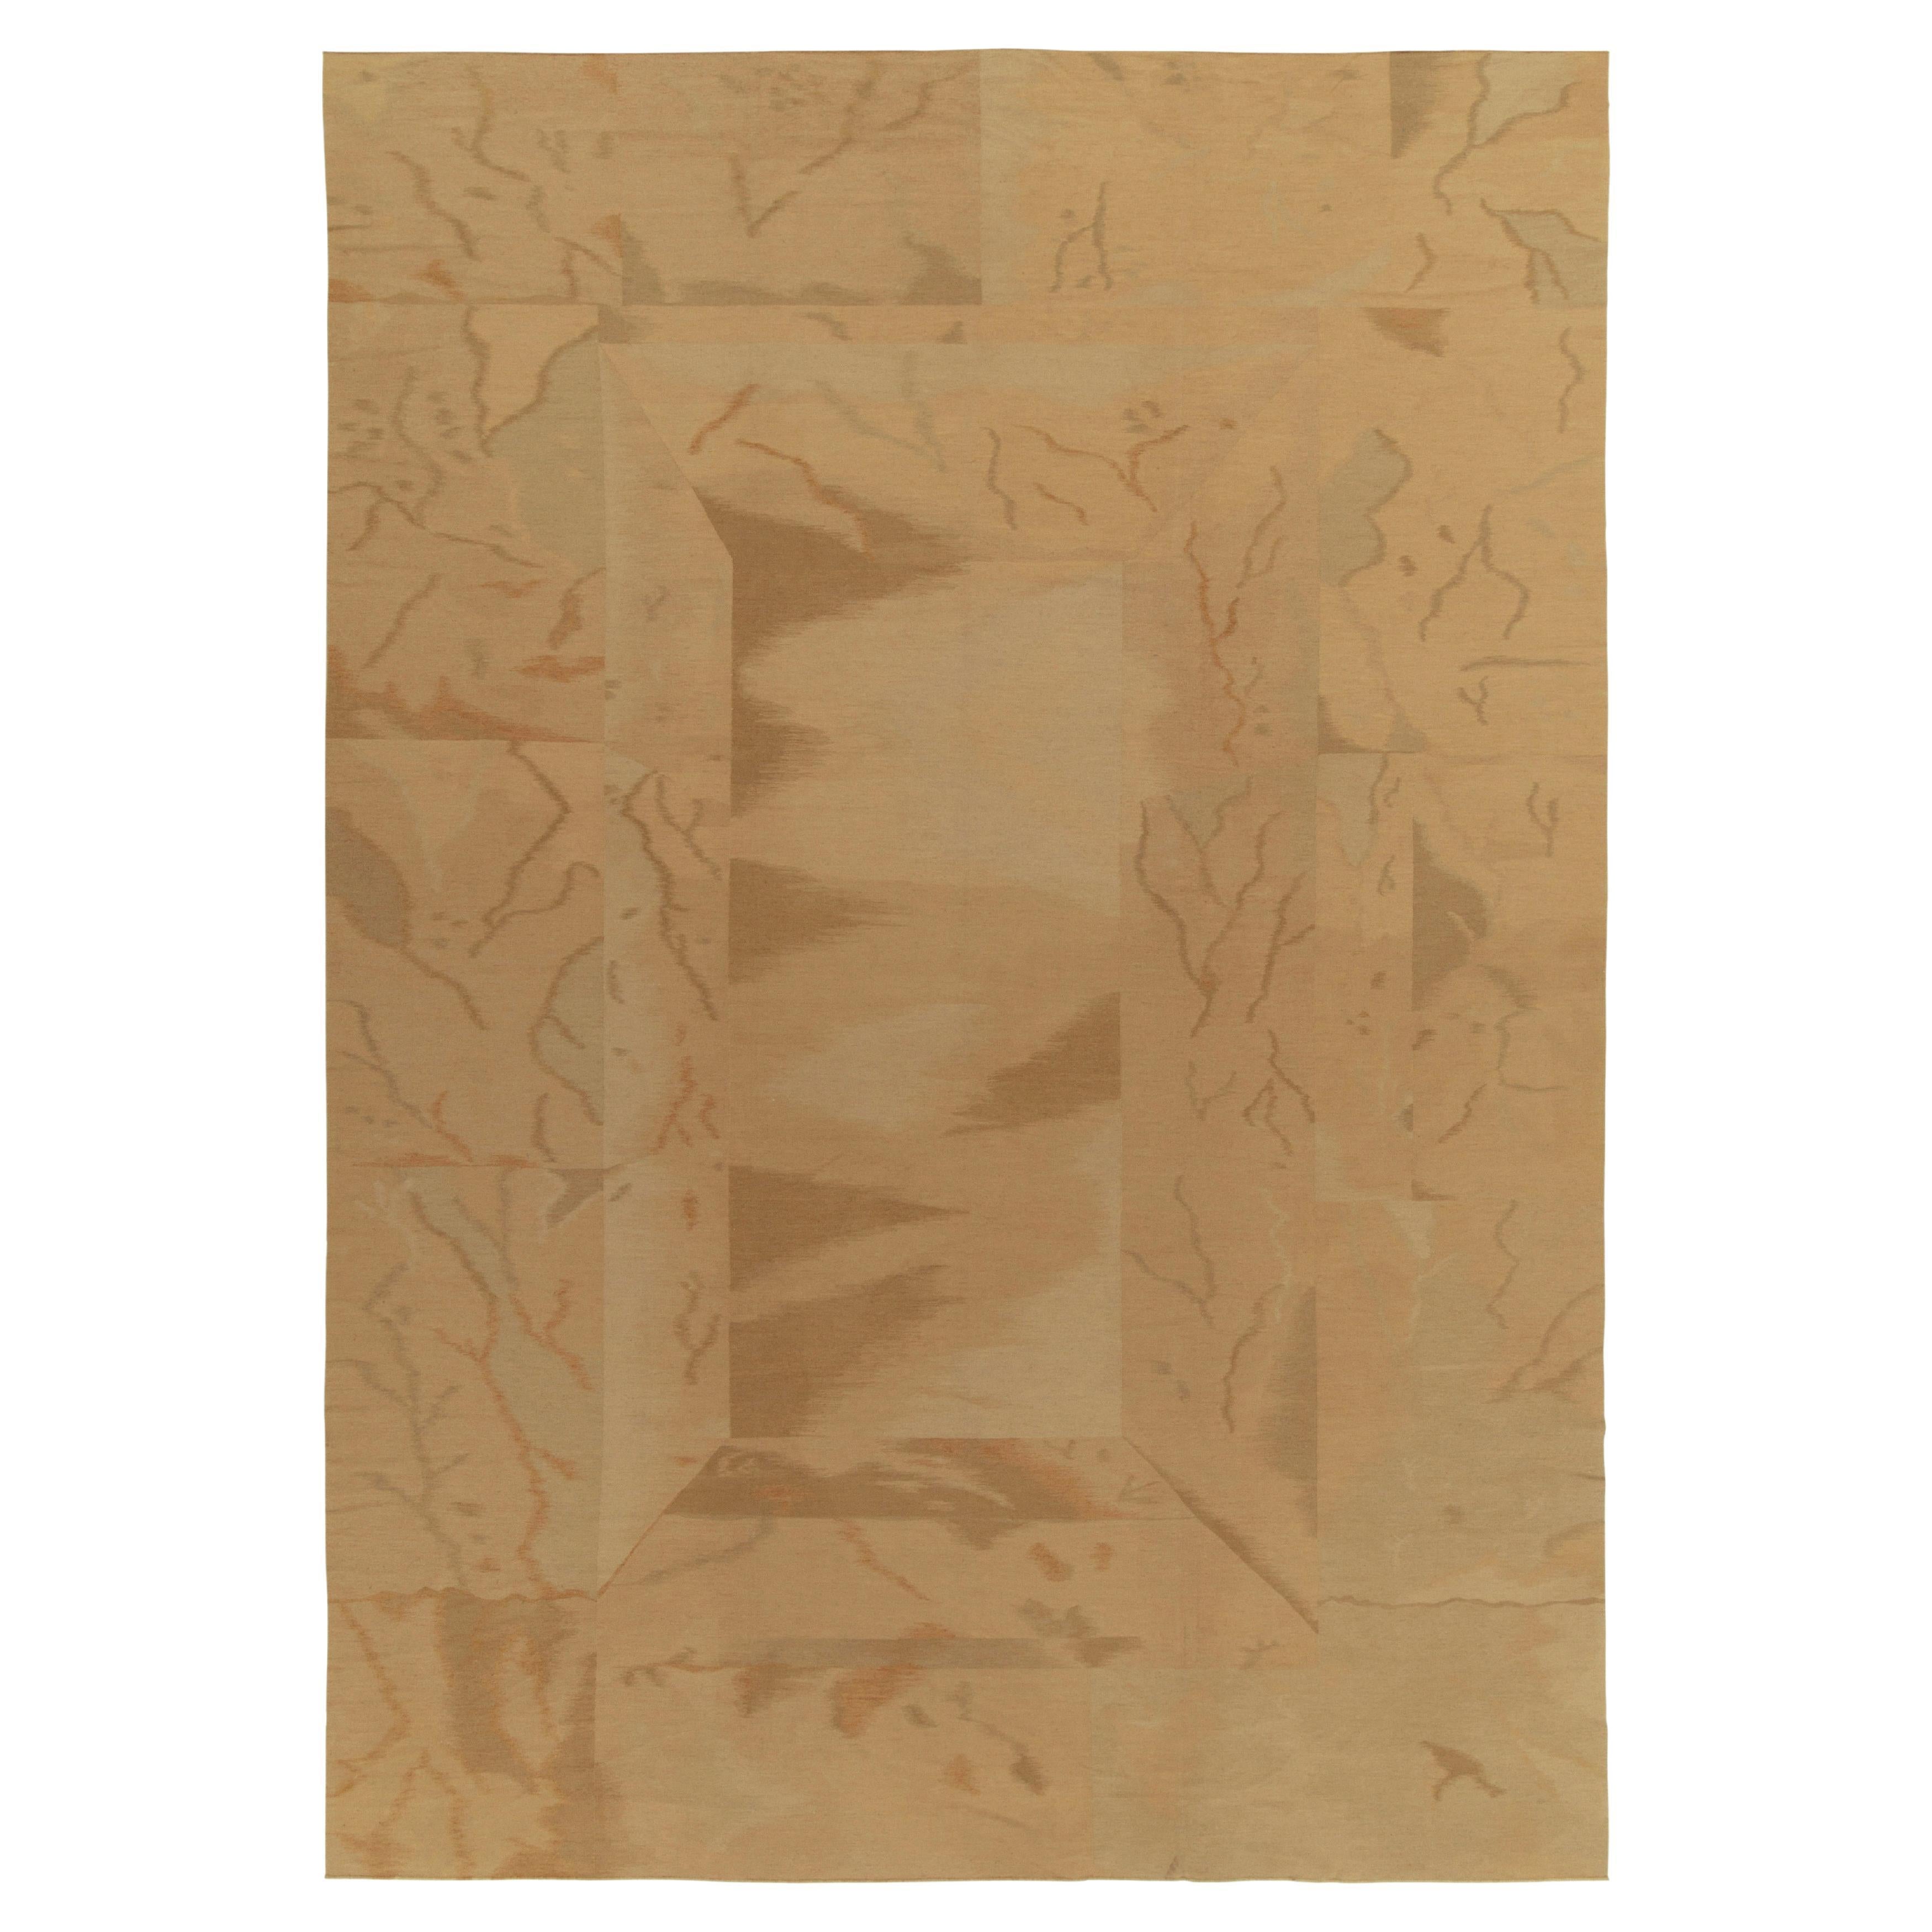 Vintage Handmade kilim in Beige-Brown Abstract Pattern by Rug & Kilim